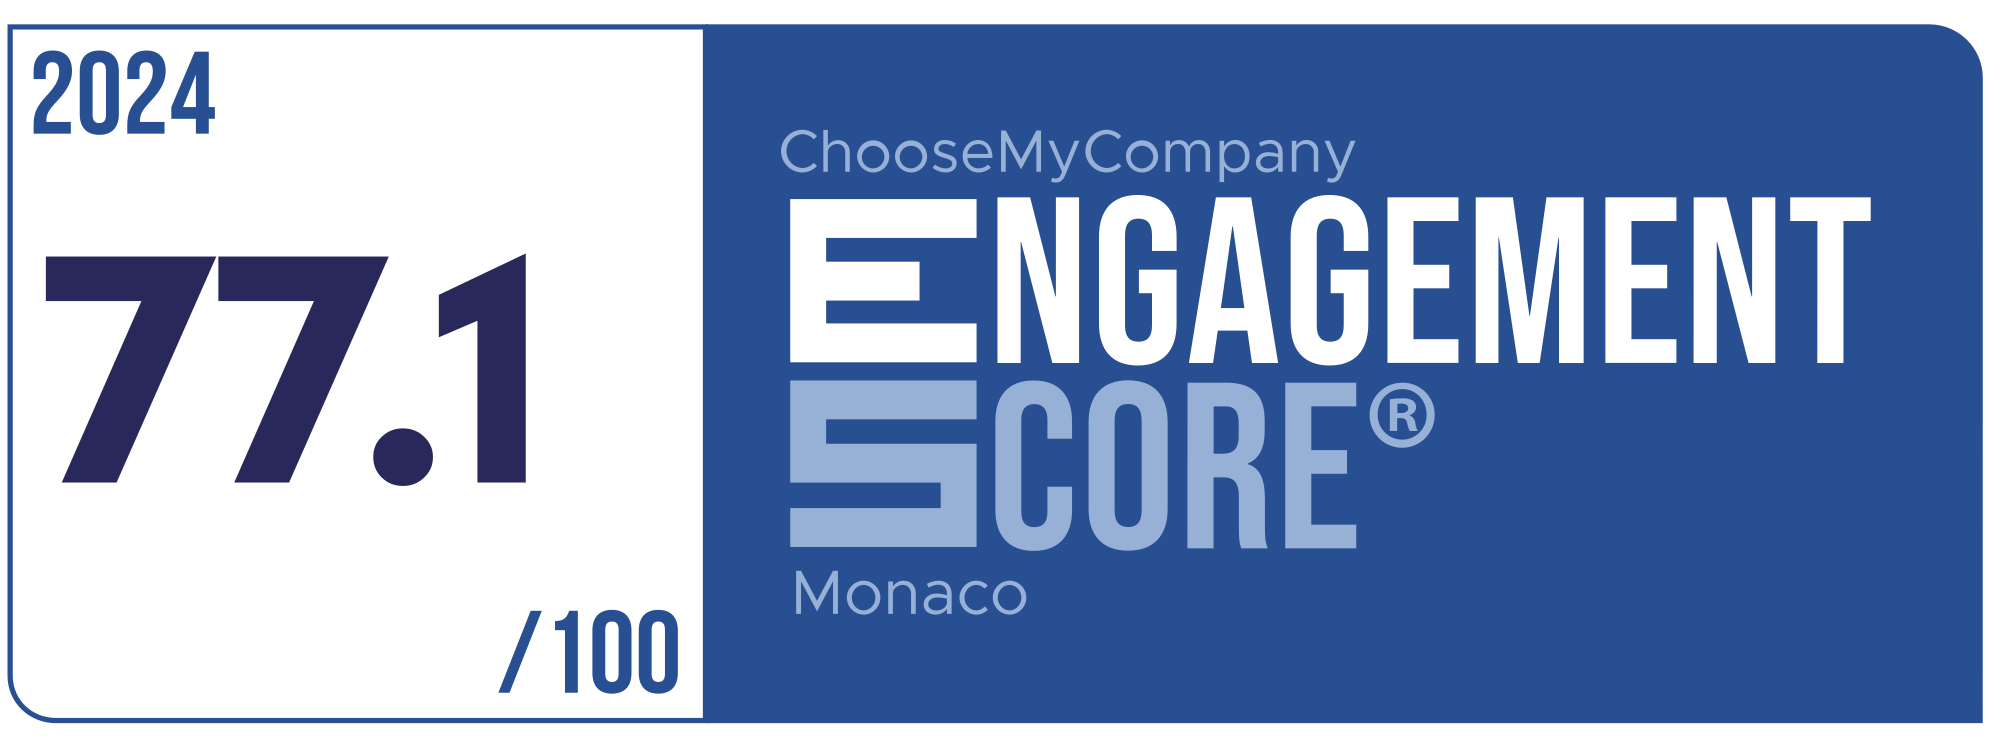 Label Engagement Score 2024 Monaco